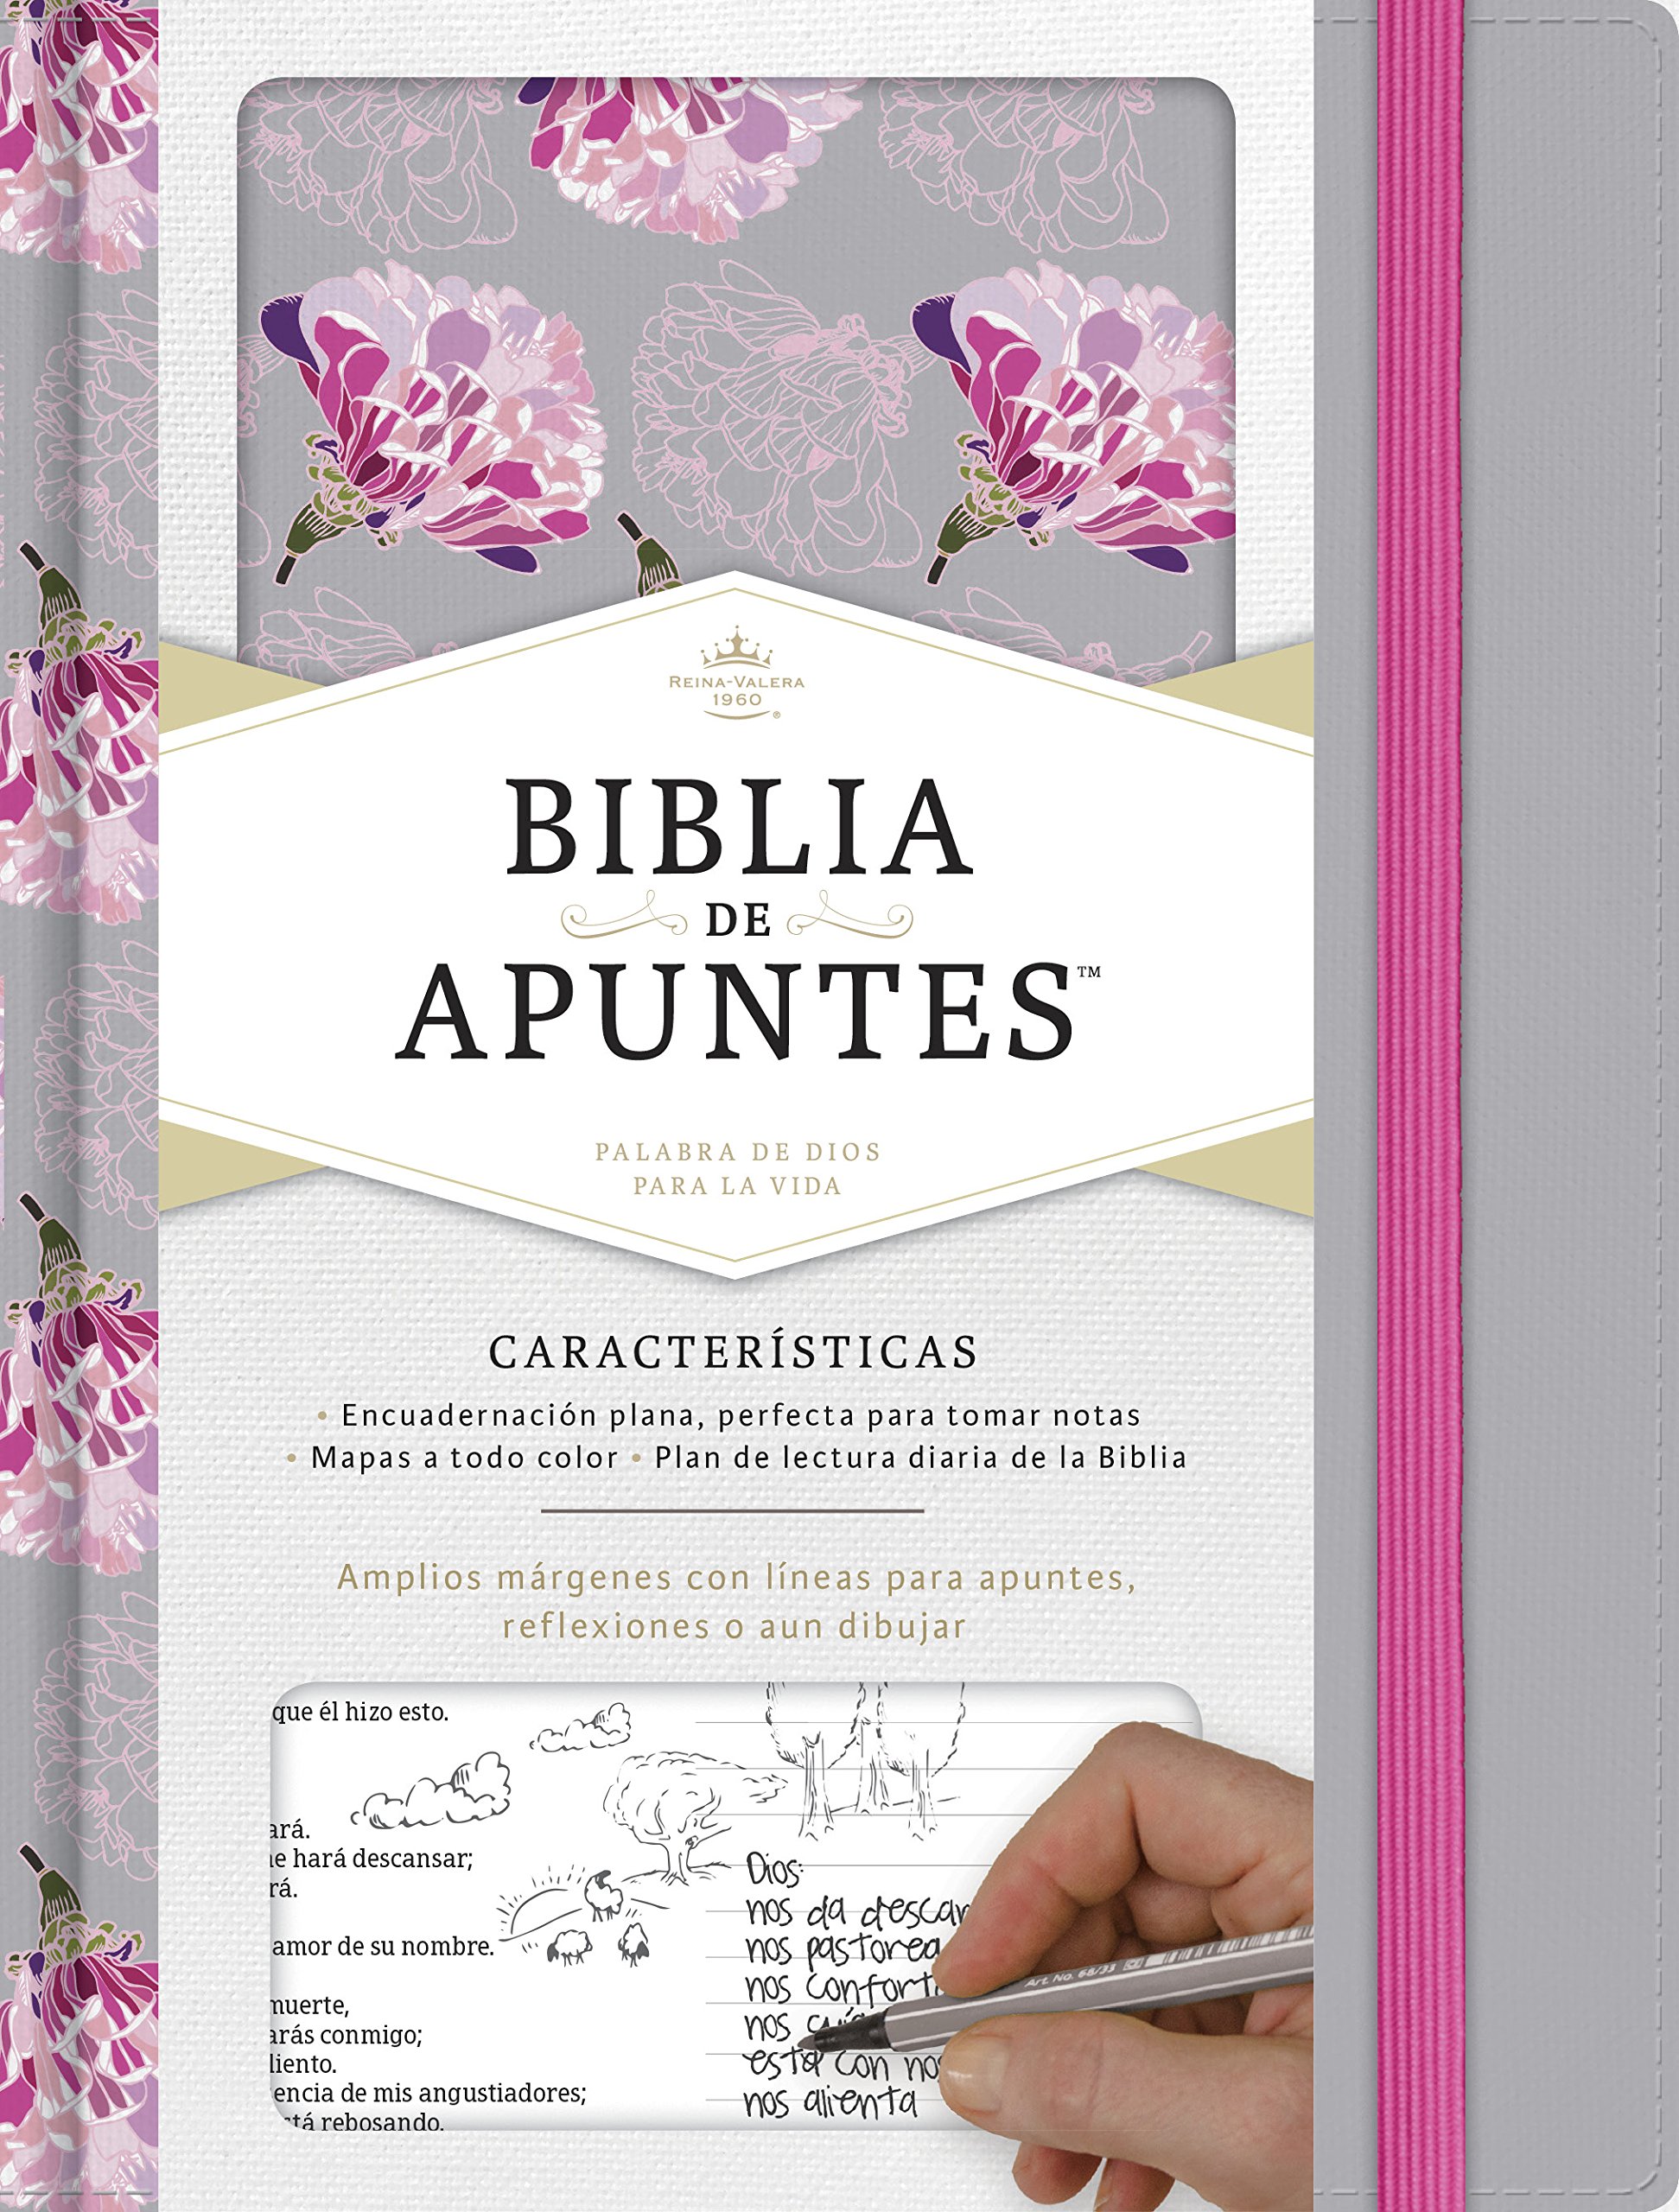 Biblia Reina Valera 1960 de apuntes gris y floreado , tela impresa | RVR 1960 NoteTaking Bible, Grey and Pink, Cloth over Board (Spanish Edition)